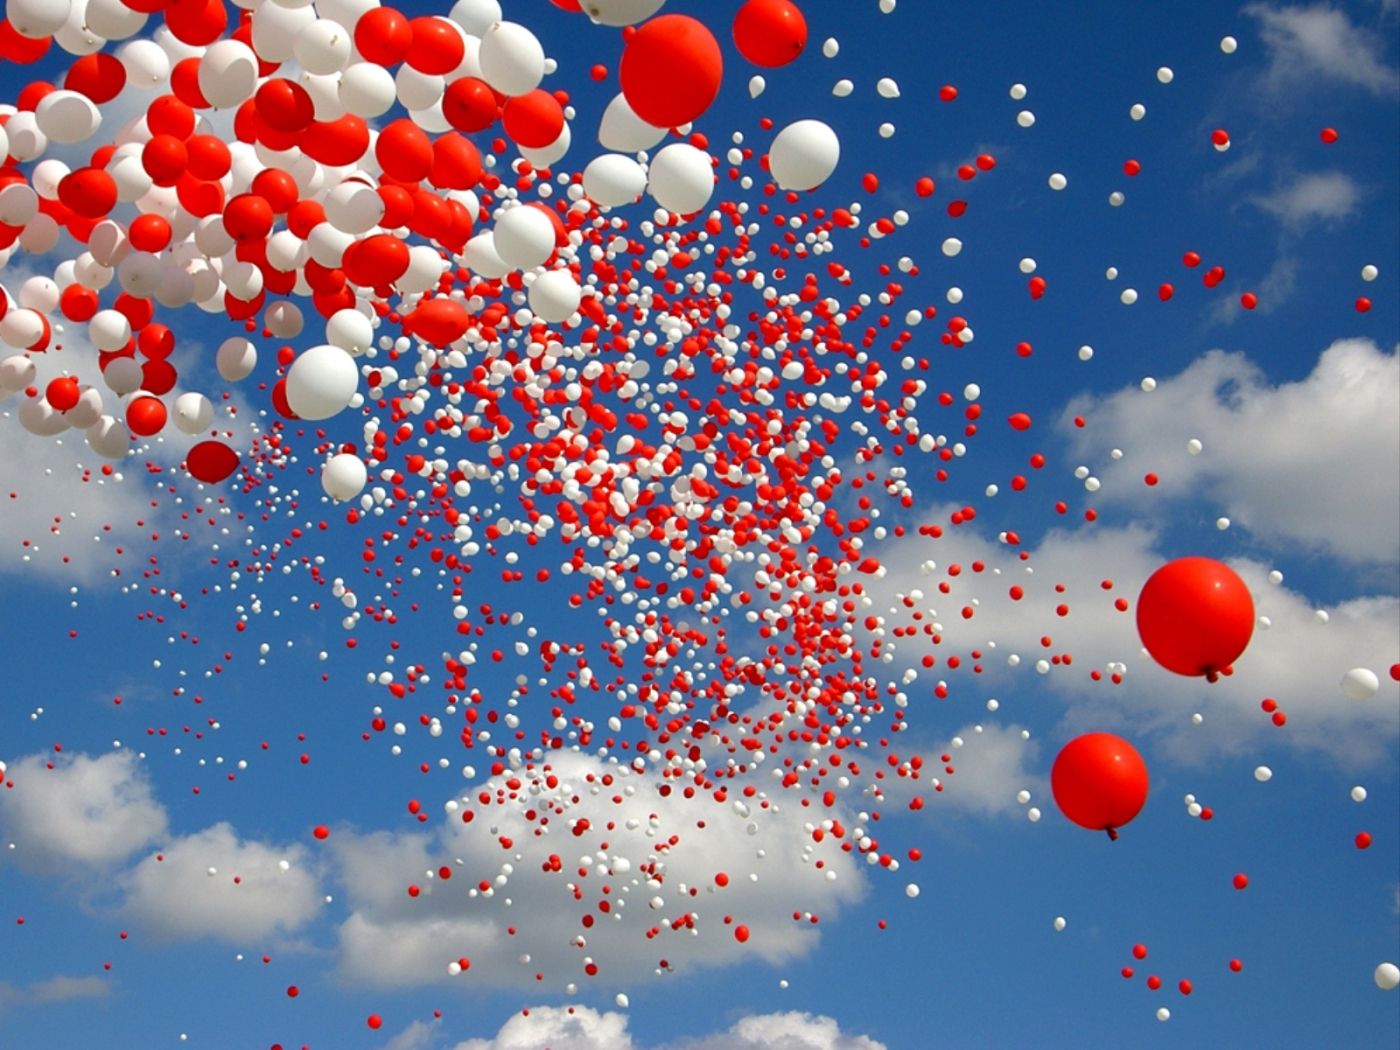  Luftballons Hintergrundbild 1400x1050. Laden Sie Das Luftballons Hintergrundbild Für Ihr Handy In Hochwertigen, Hintergrundbildern Luftballons Kostenlos Herunter